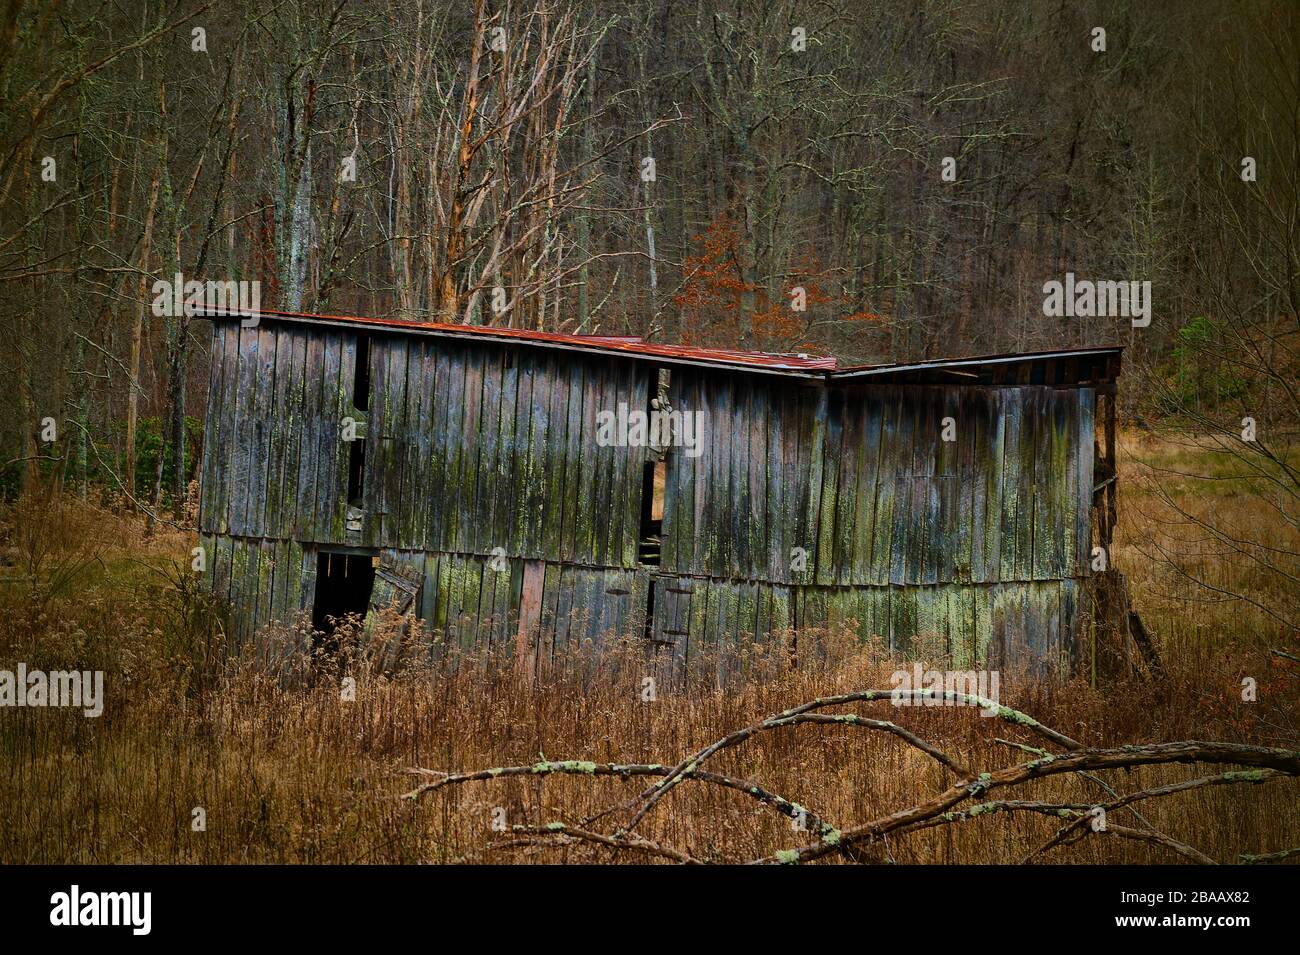 La structure en décomposition abandondée est restée à la nature dans un cadre rural côté pays en Virginie, aux États-Unis Banque D'Images